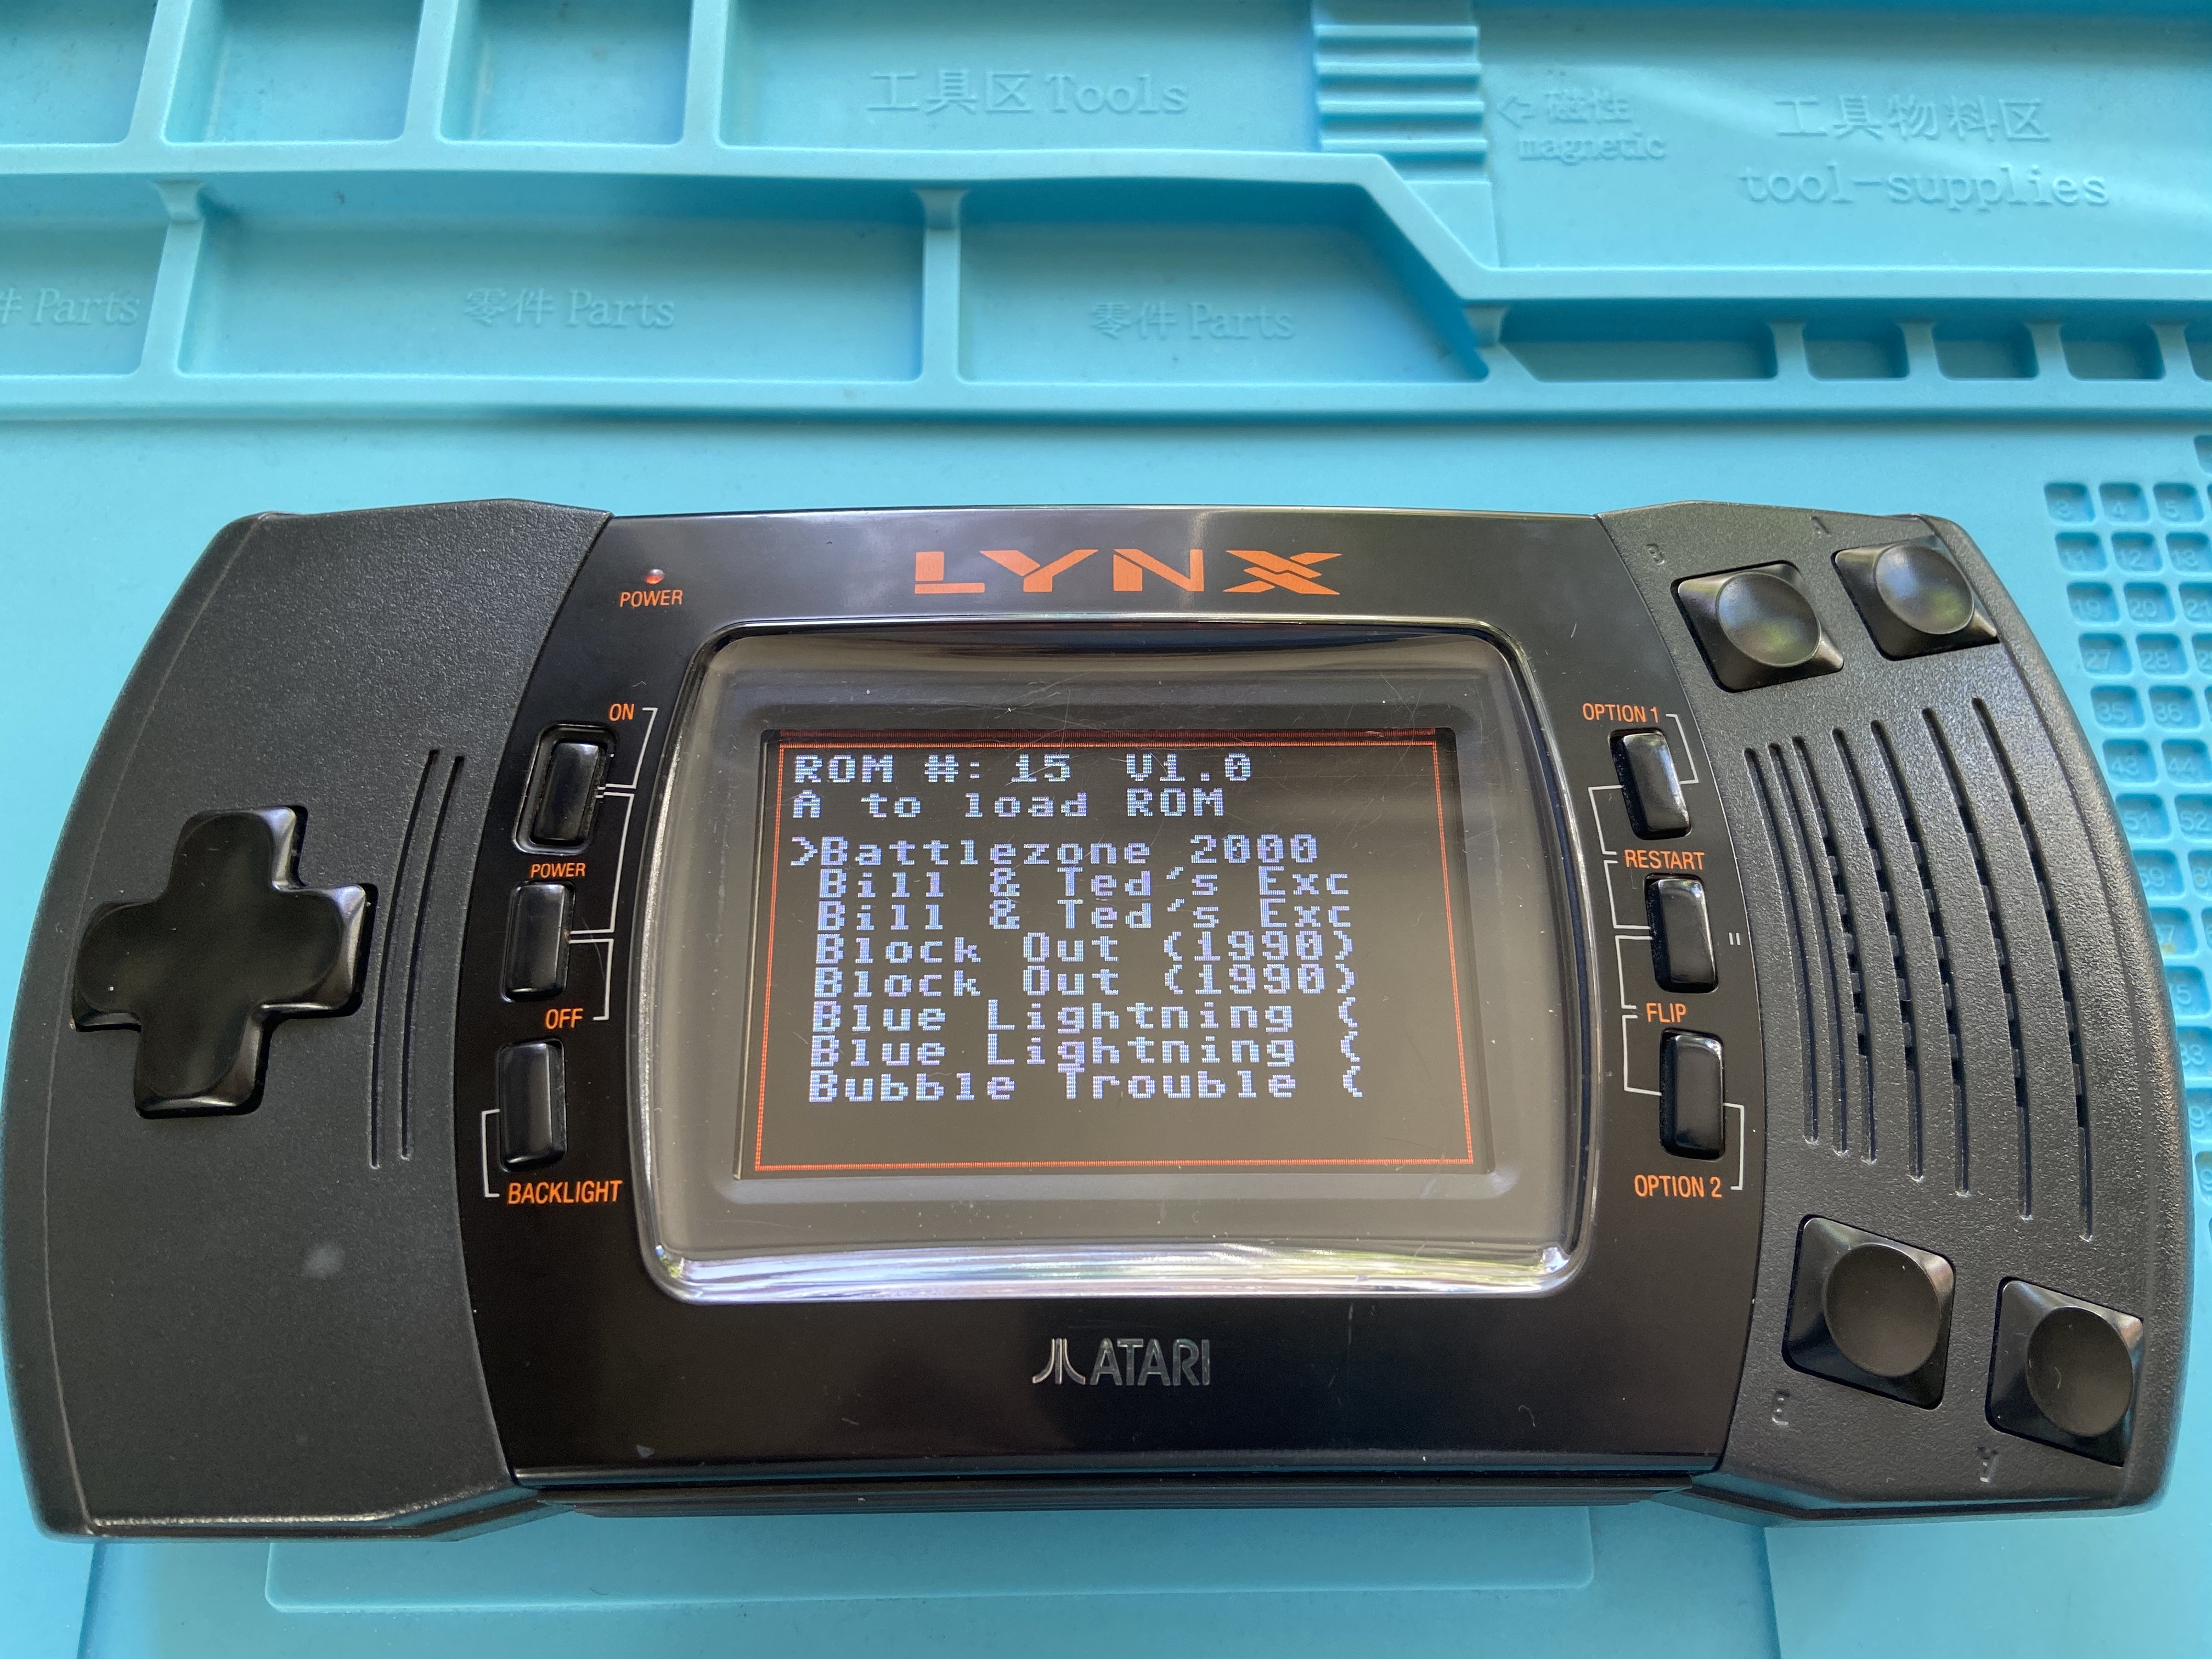 BennVenn ElCheapoSD menu on an Atari Lynx 2